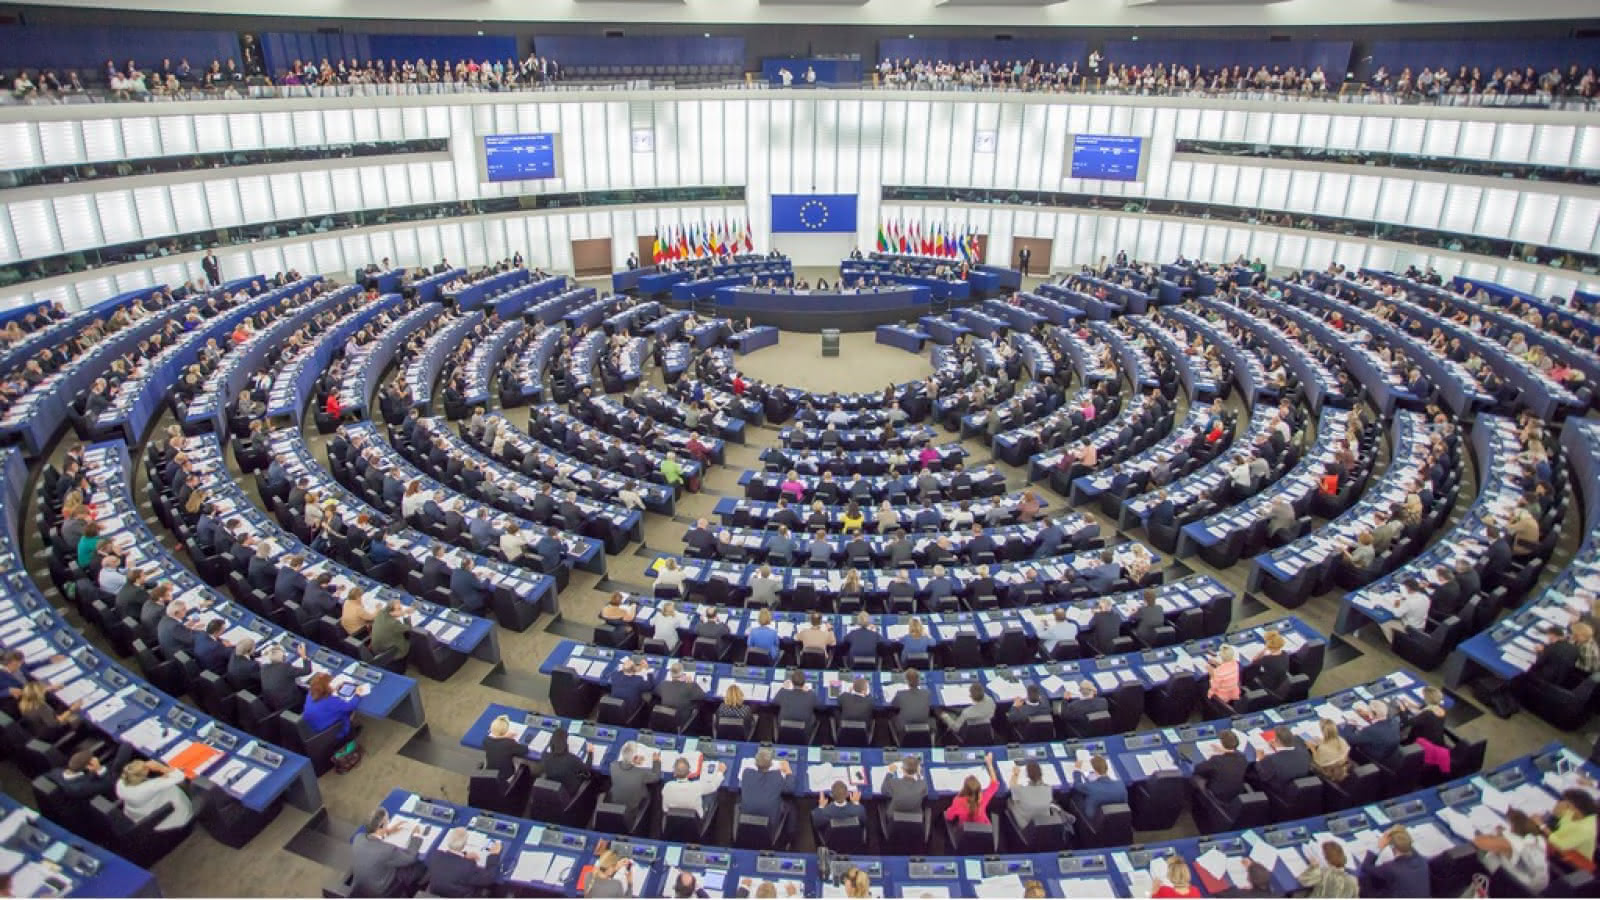 Δημοσκόπηση: Ευρωεκλογές ως ψήφος διαμαρτυρίας για 6 στους 10 - Οι συσπειρώσεις των κομμάτων